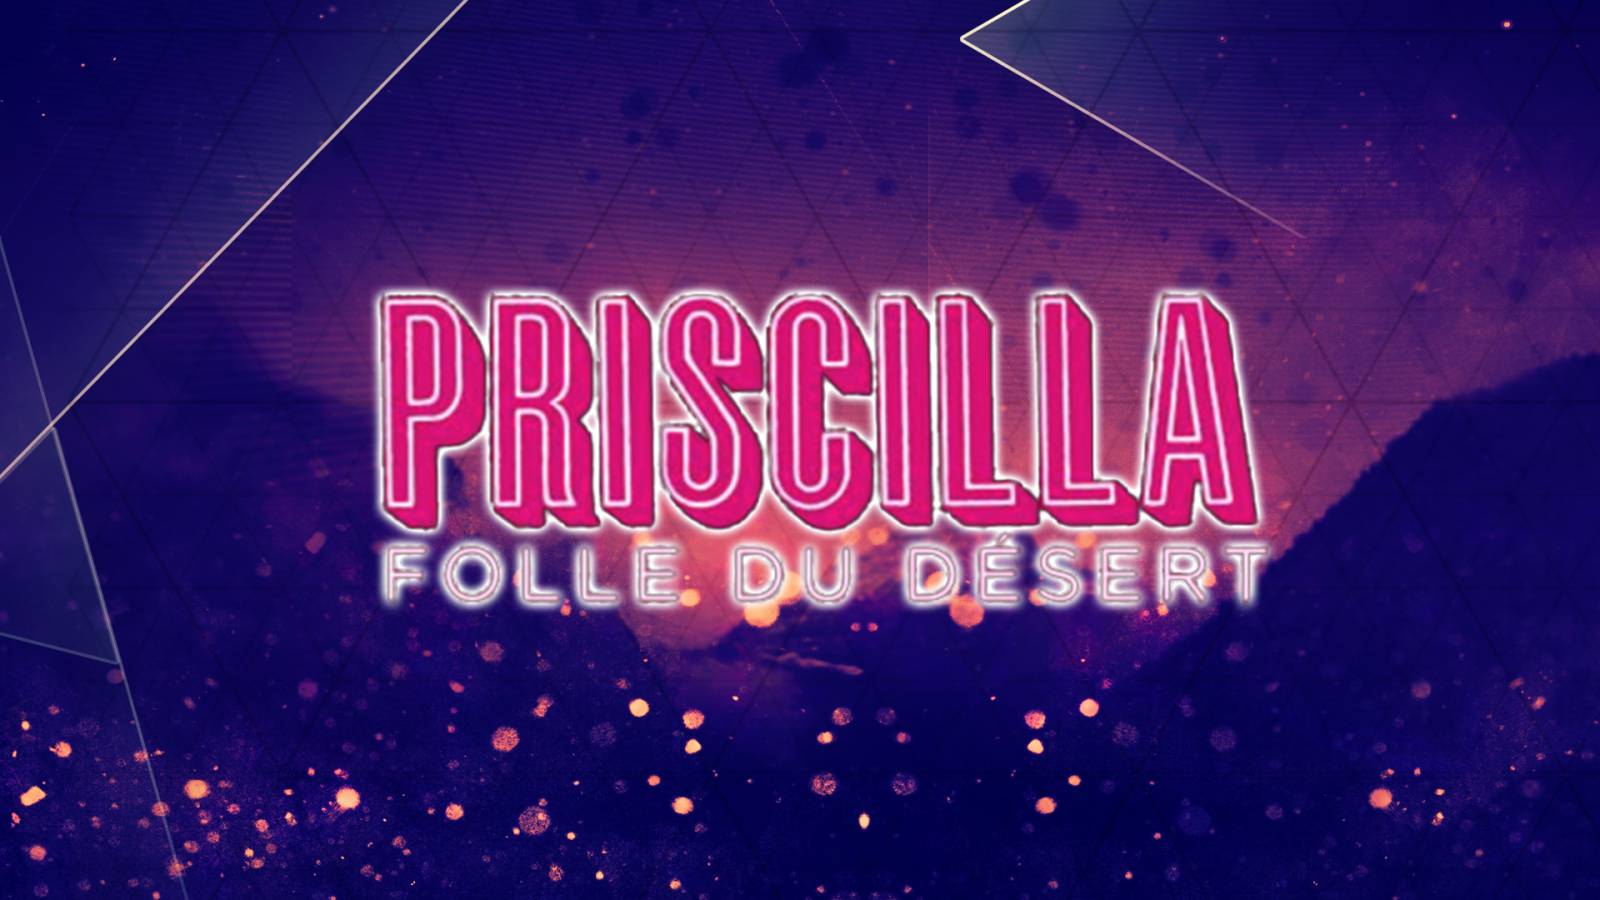 Priscilla, Folle du Désert